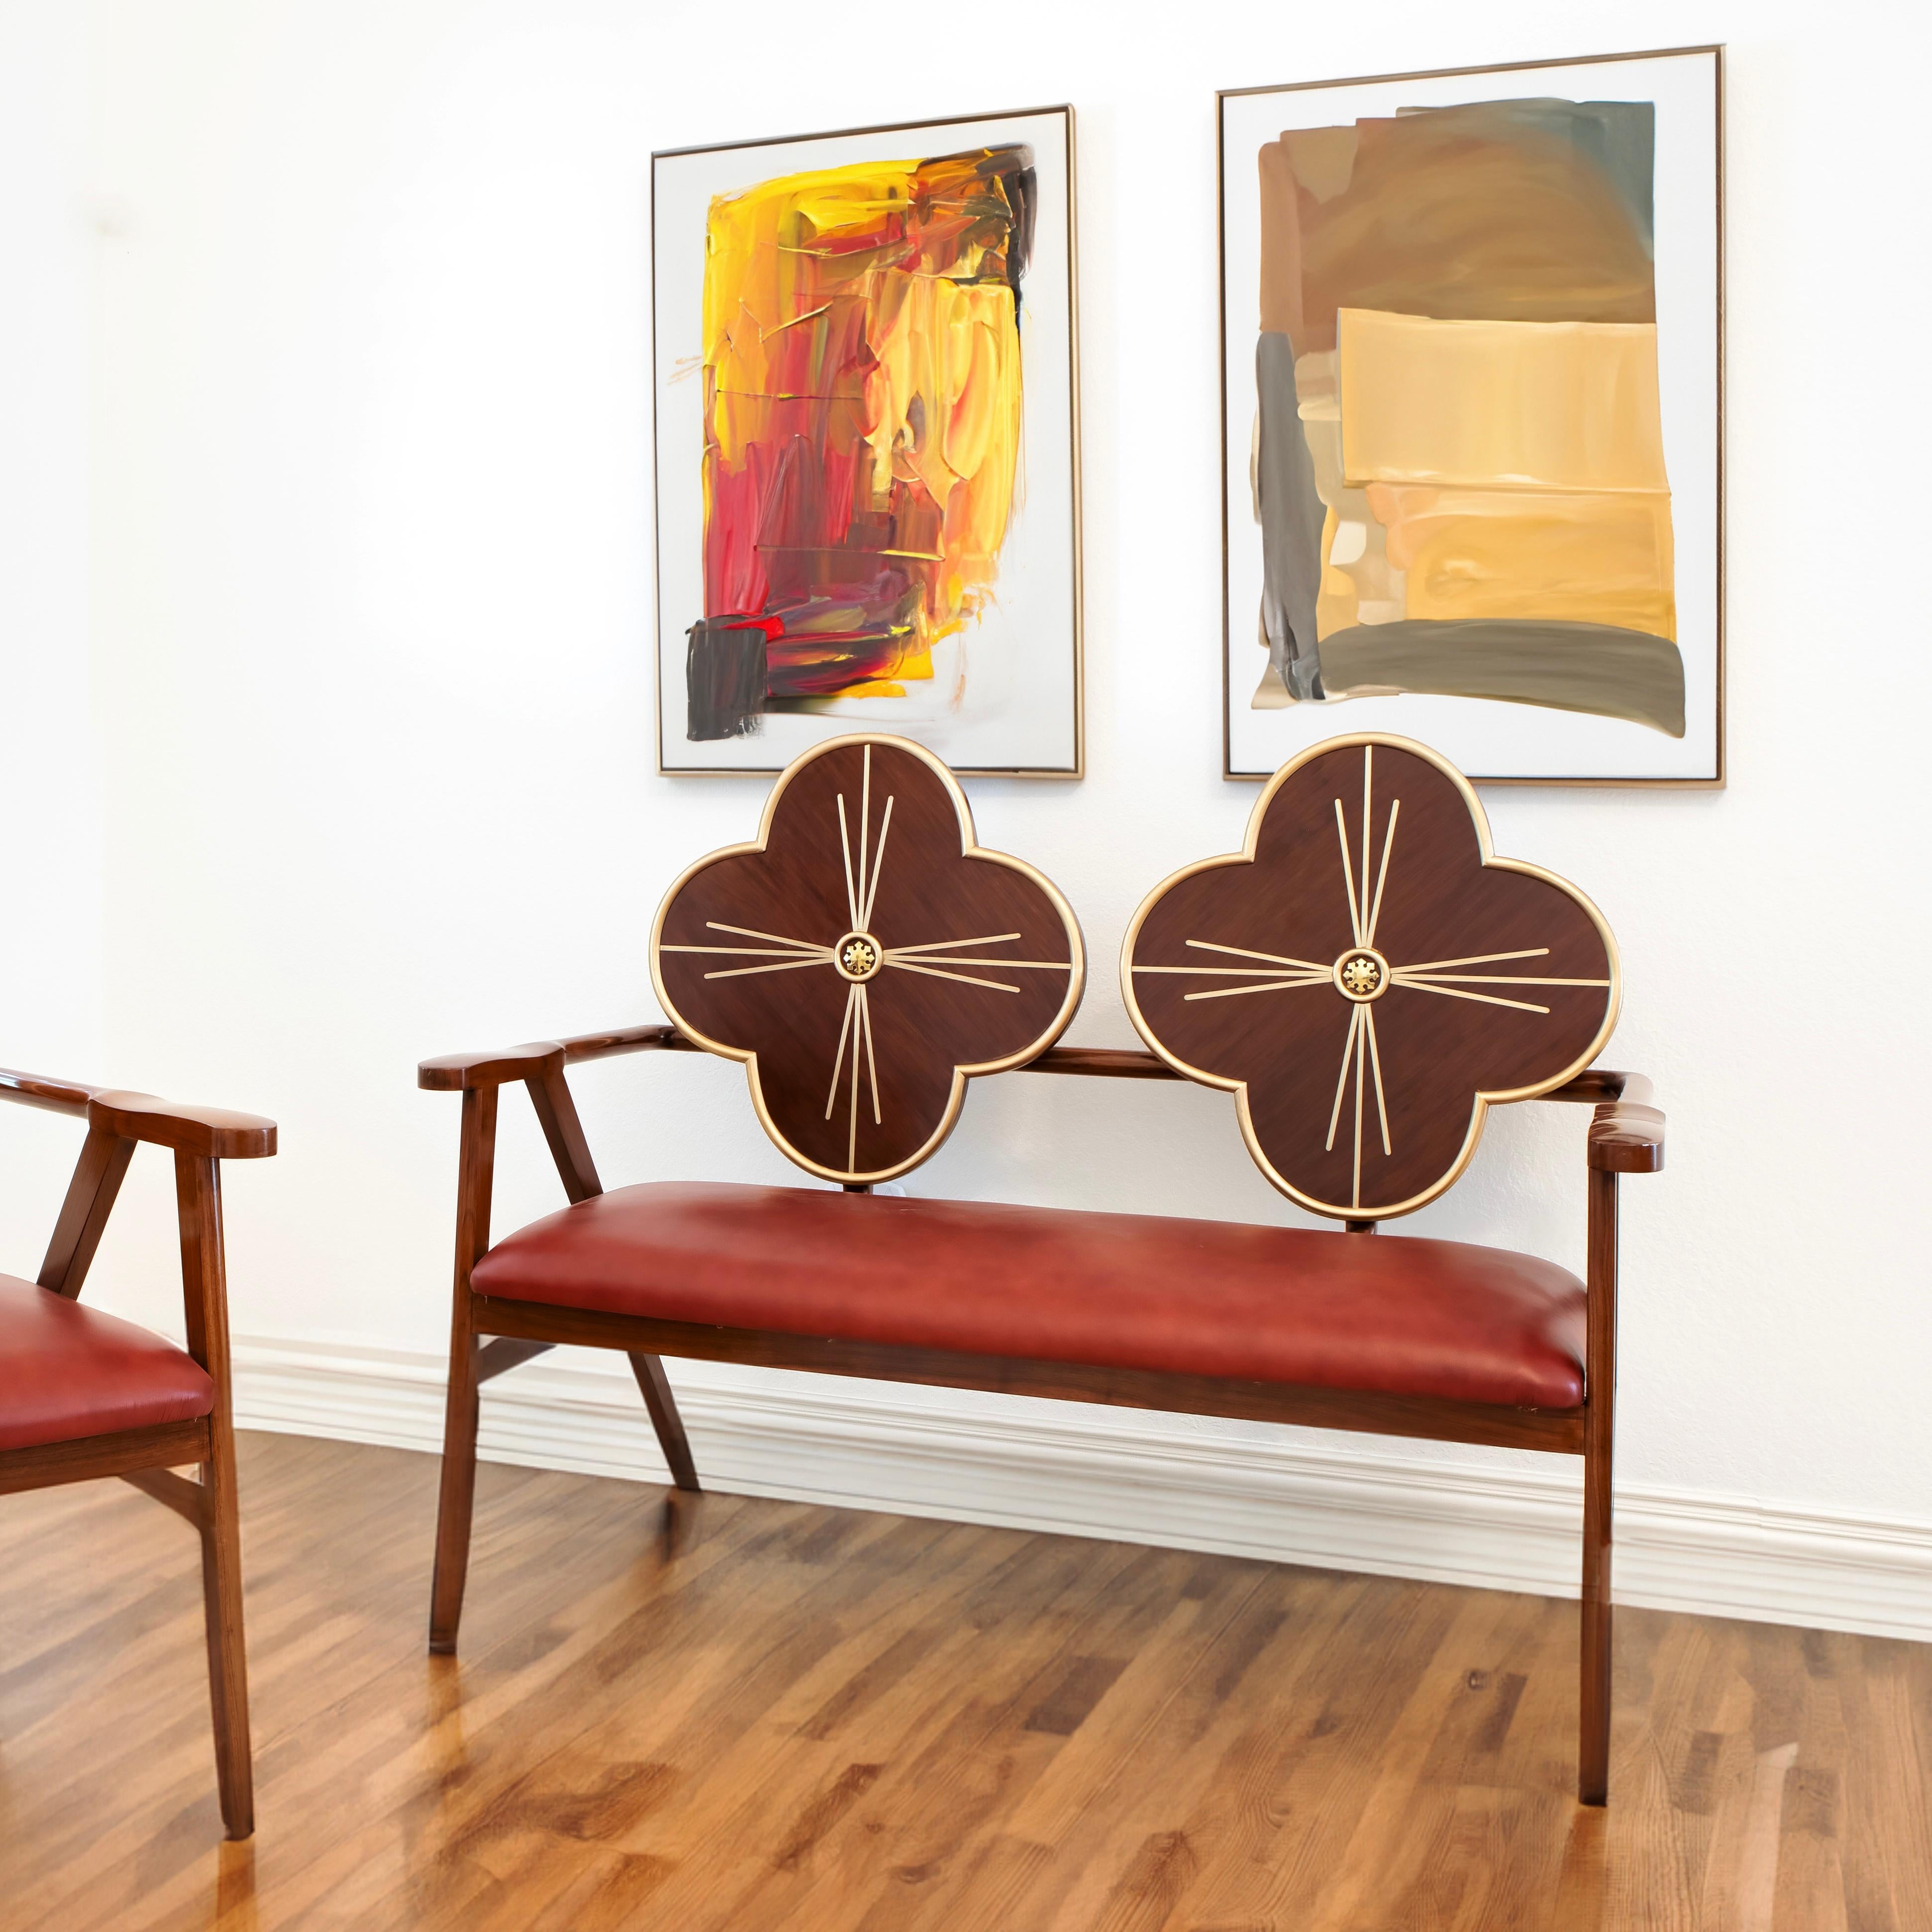 Erhöhen Sie Ihren Raum mit Jugendstileleganz: Der Fleur-Stuhl

Tauchen Sie mit dem Fleur Chair in die opulente Welt des Jugendstils ein - ein wahres Meisterwerk, bei dem die Anmut der Natur auf zeitloses Design trifft. Dieser handgefertigte Stuhl